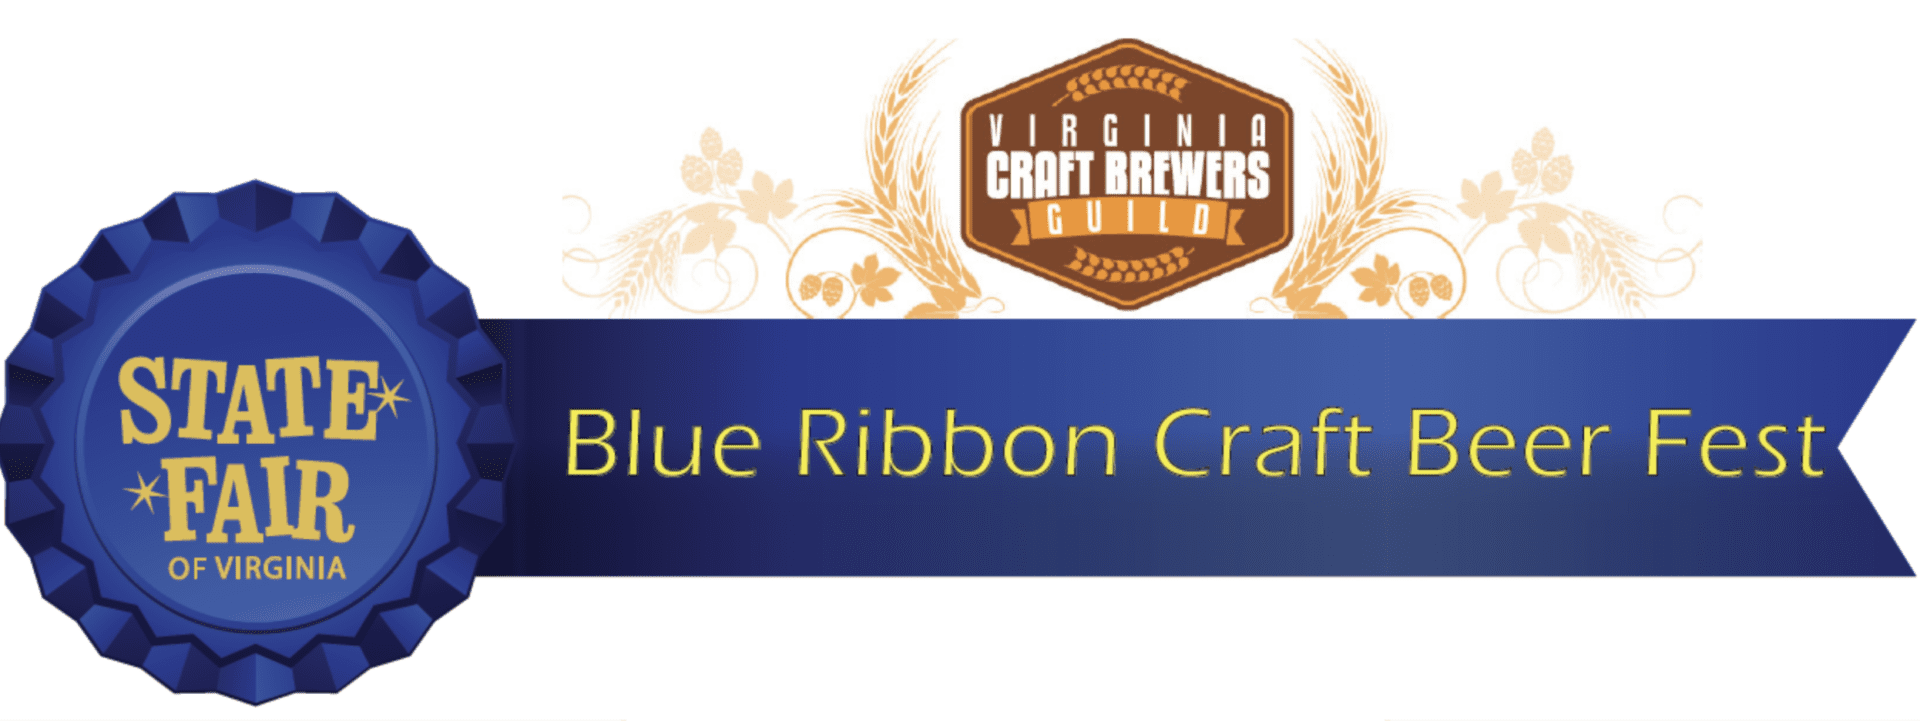 Blue Ribbon Crafts Beer Fest Header